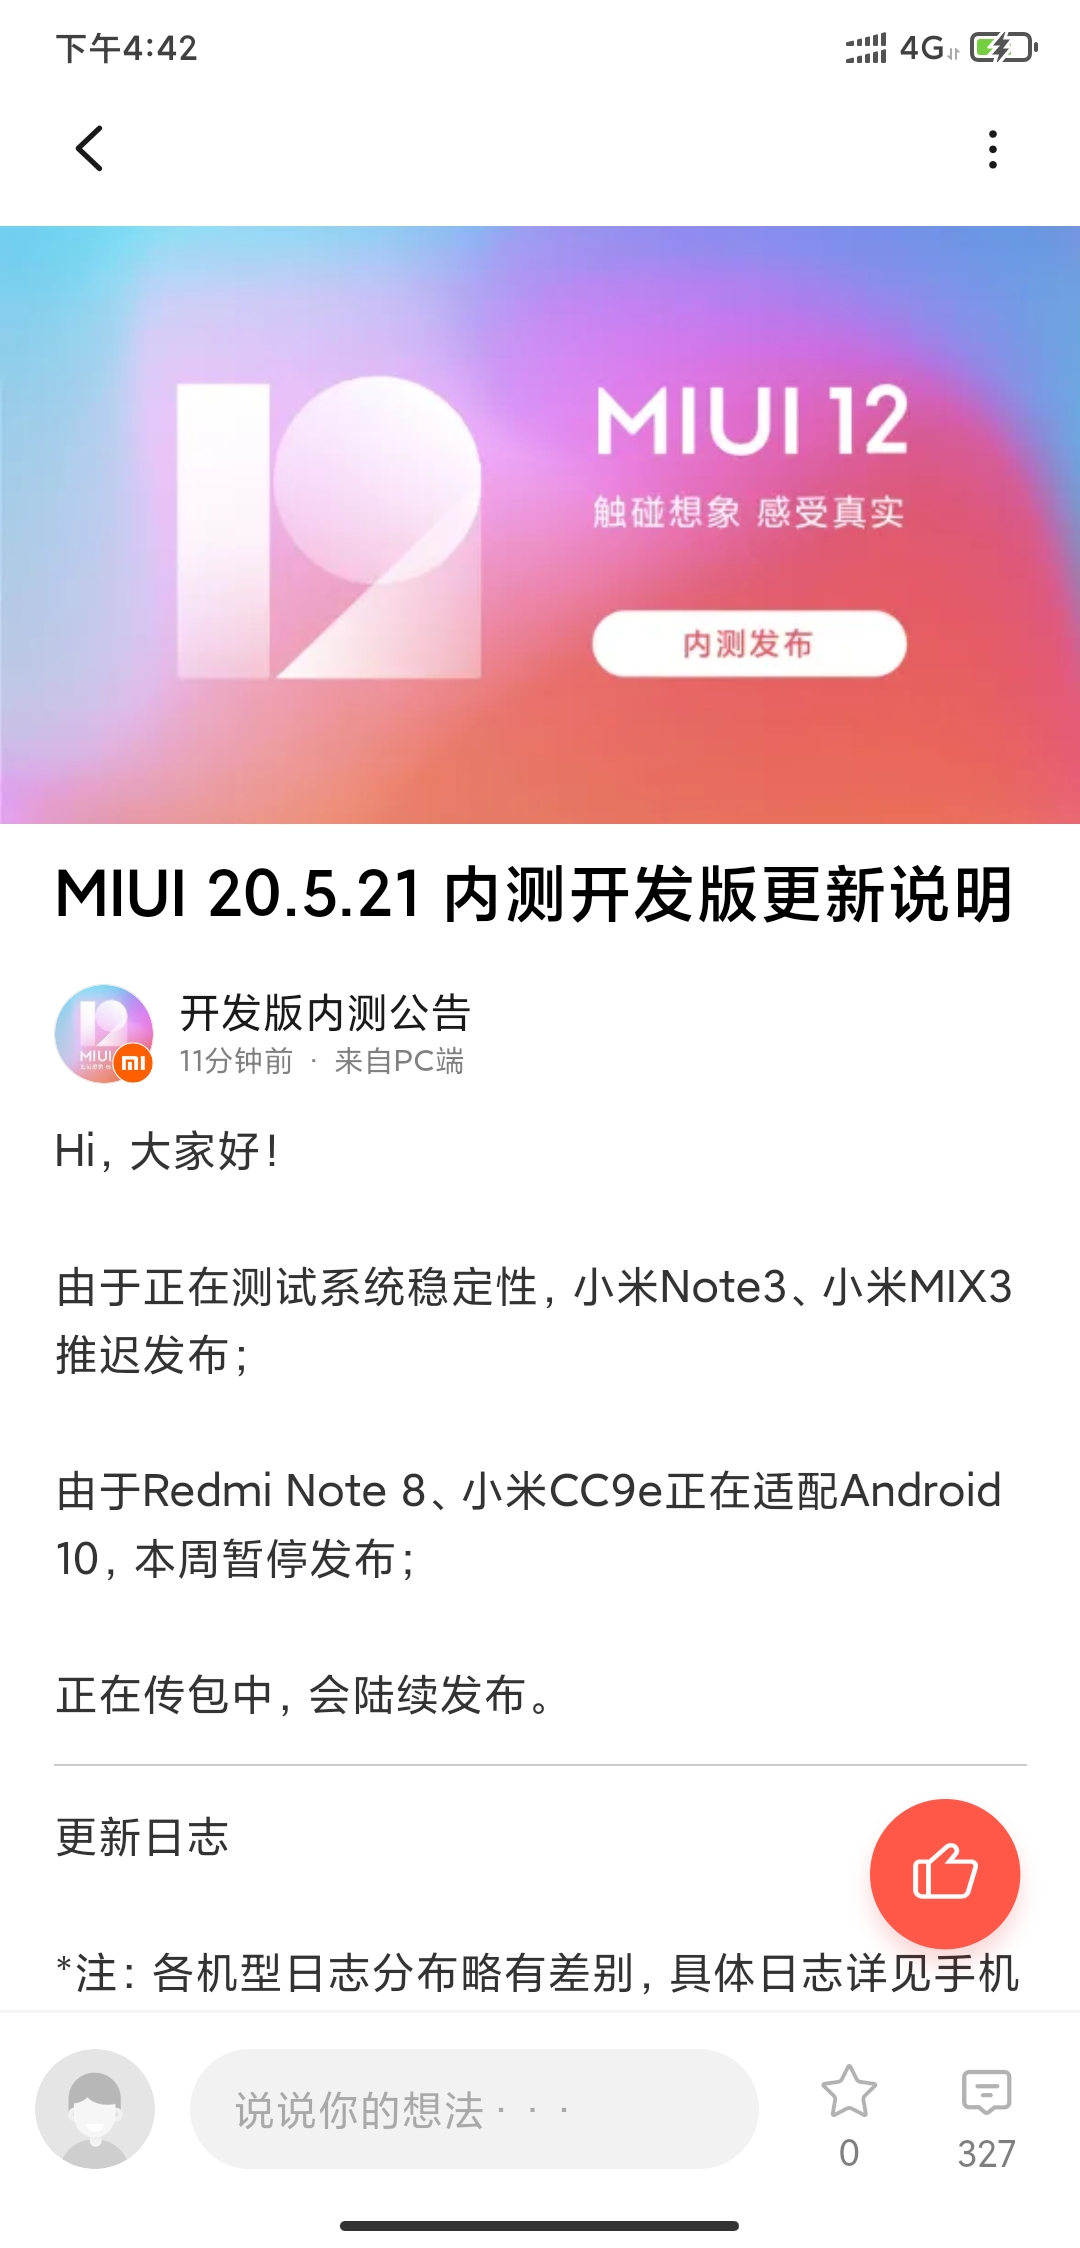 MIUI12 20.5.21升级，把MIUI12近几天的內容归纳一下